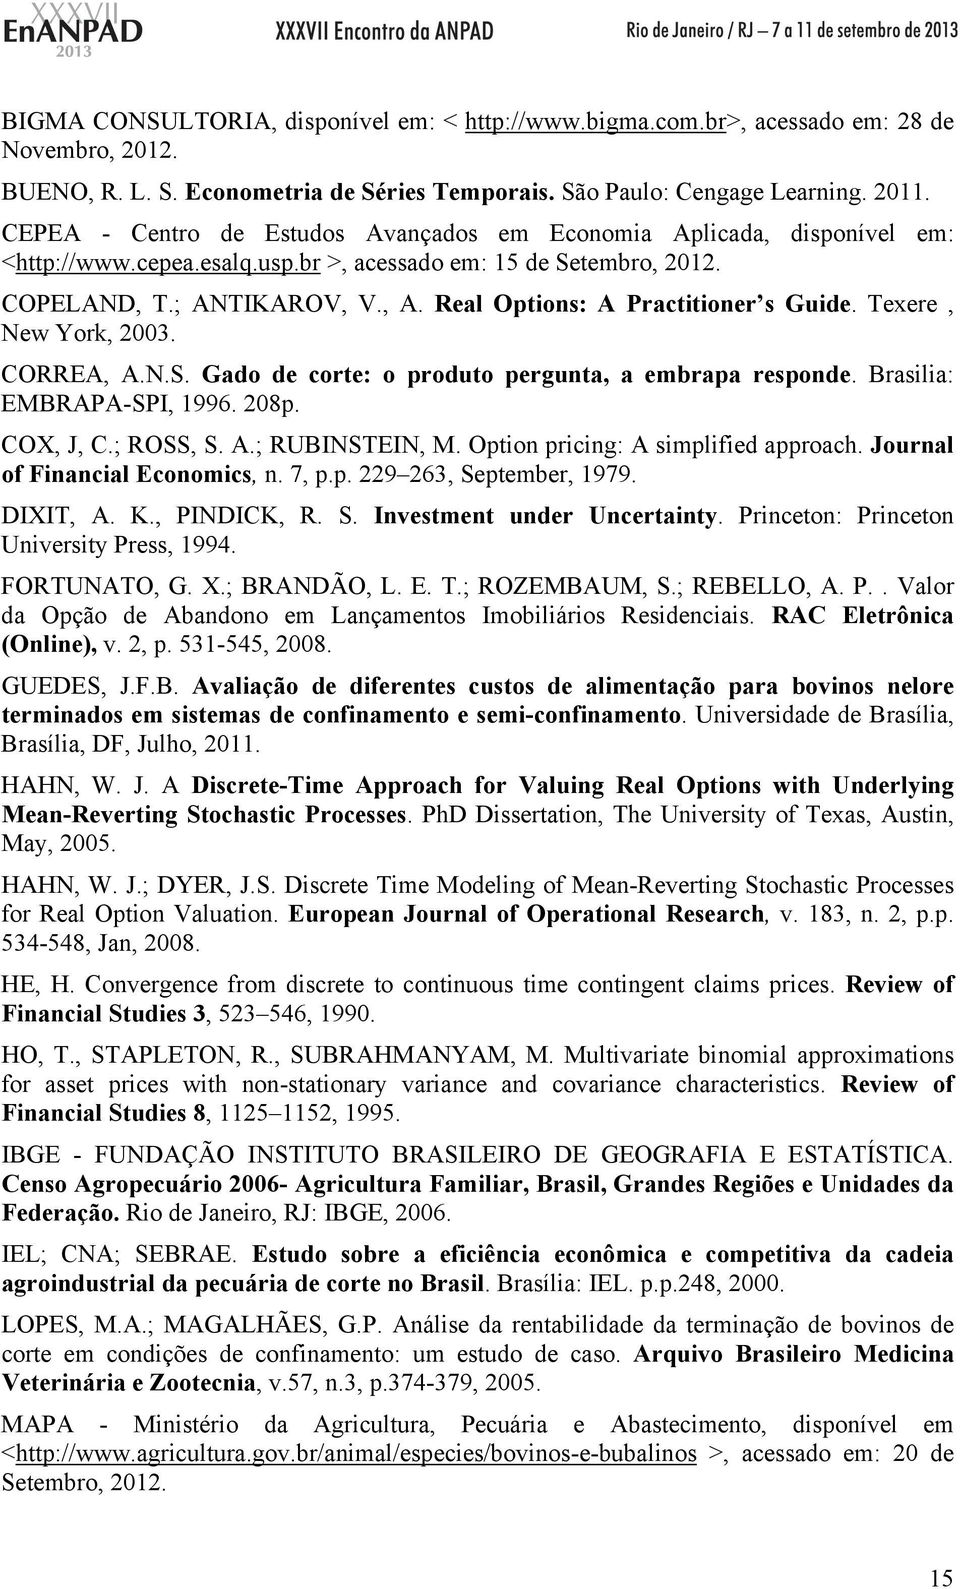 Real Options: A Practitioner s Guide. Texere, New York, 2003. CORREA, A.N.S. Gado de corte: o produto pergunta, a embrapa responde. Brasilia: EMBRAPA-SPI, 1996. 208p. COX, J, C.; ROSS, S. A.; RUBINSTEIN, M.